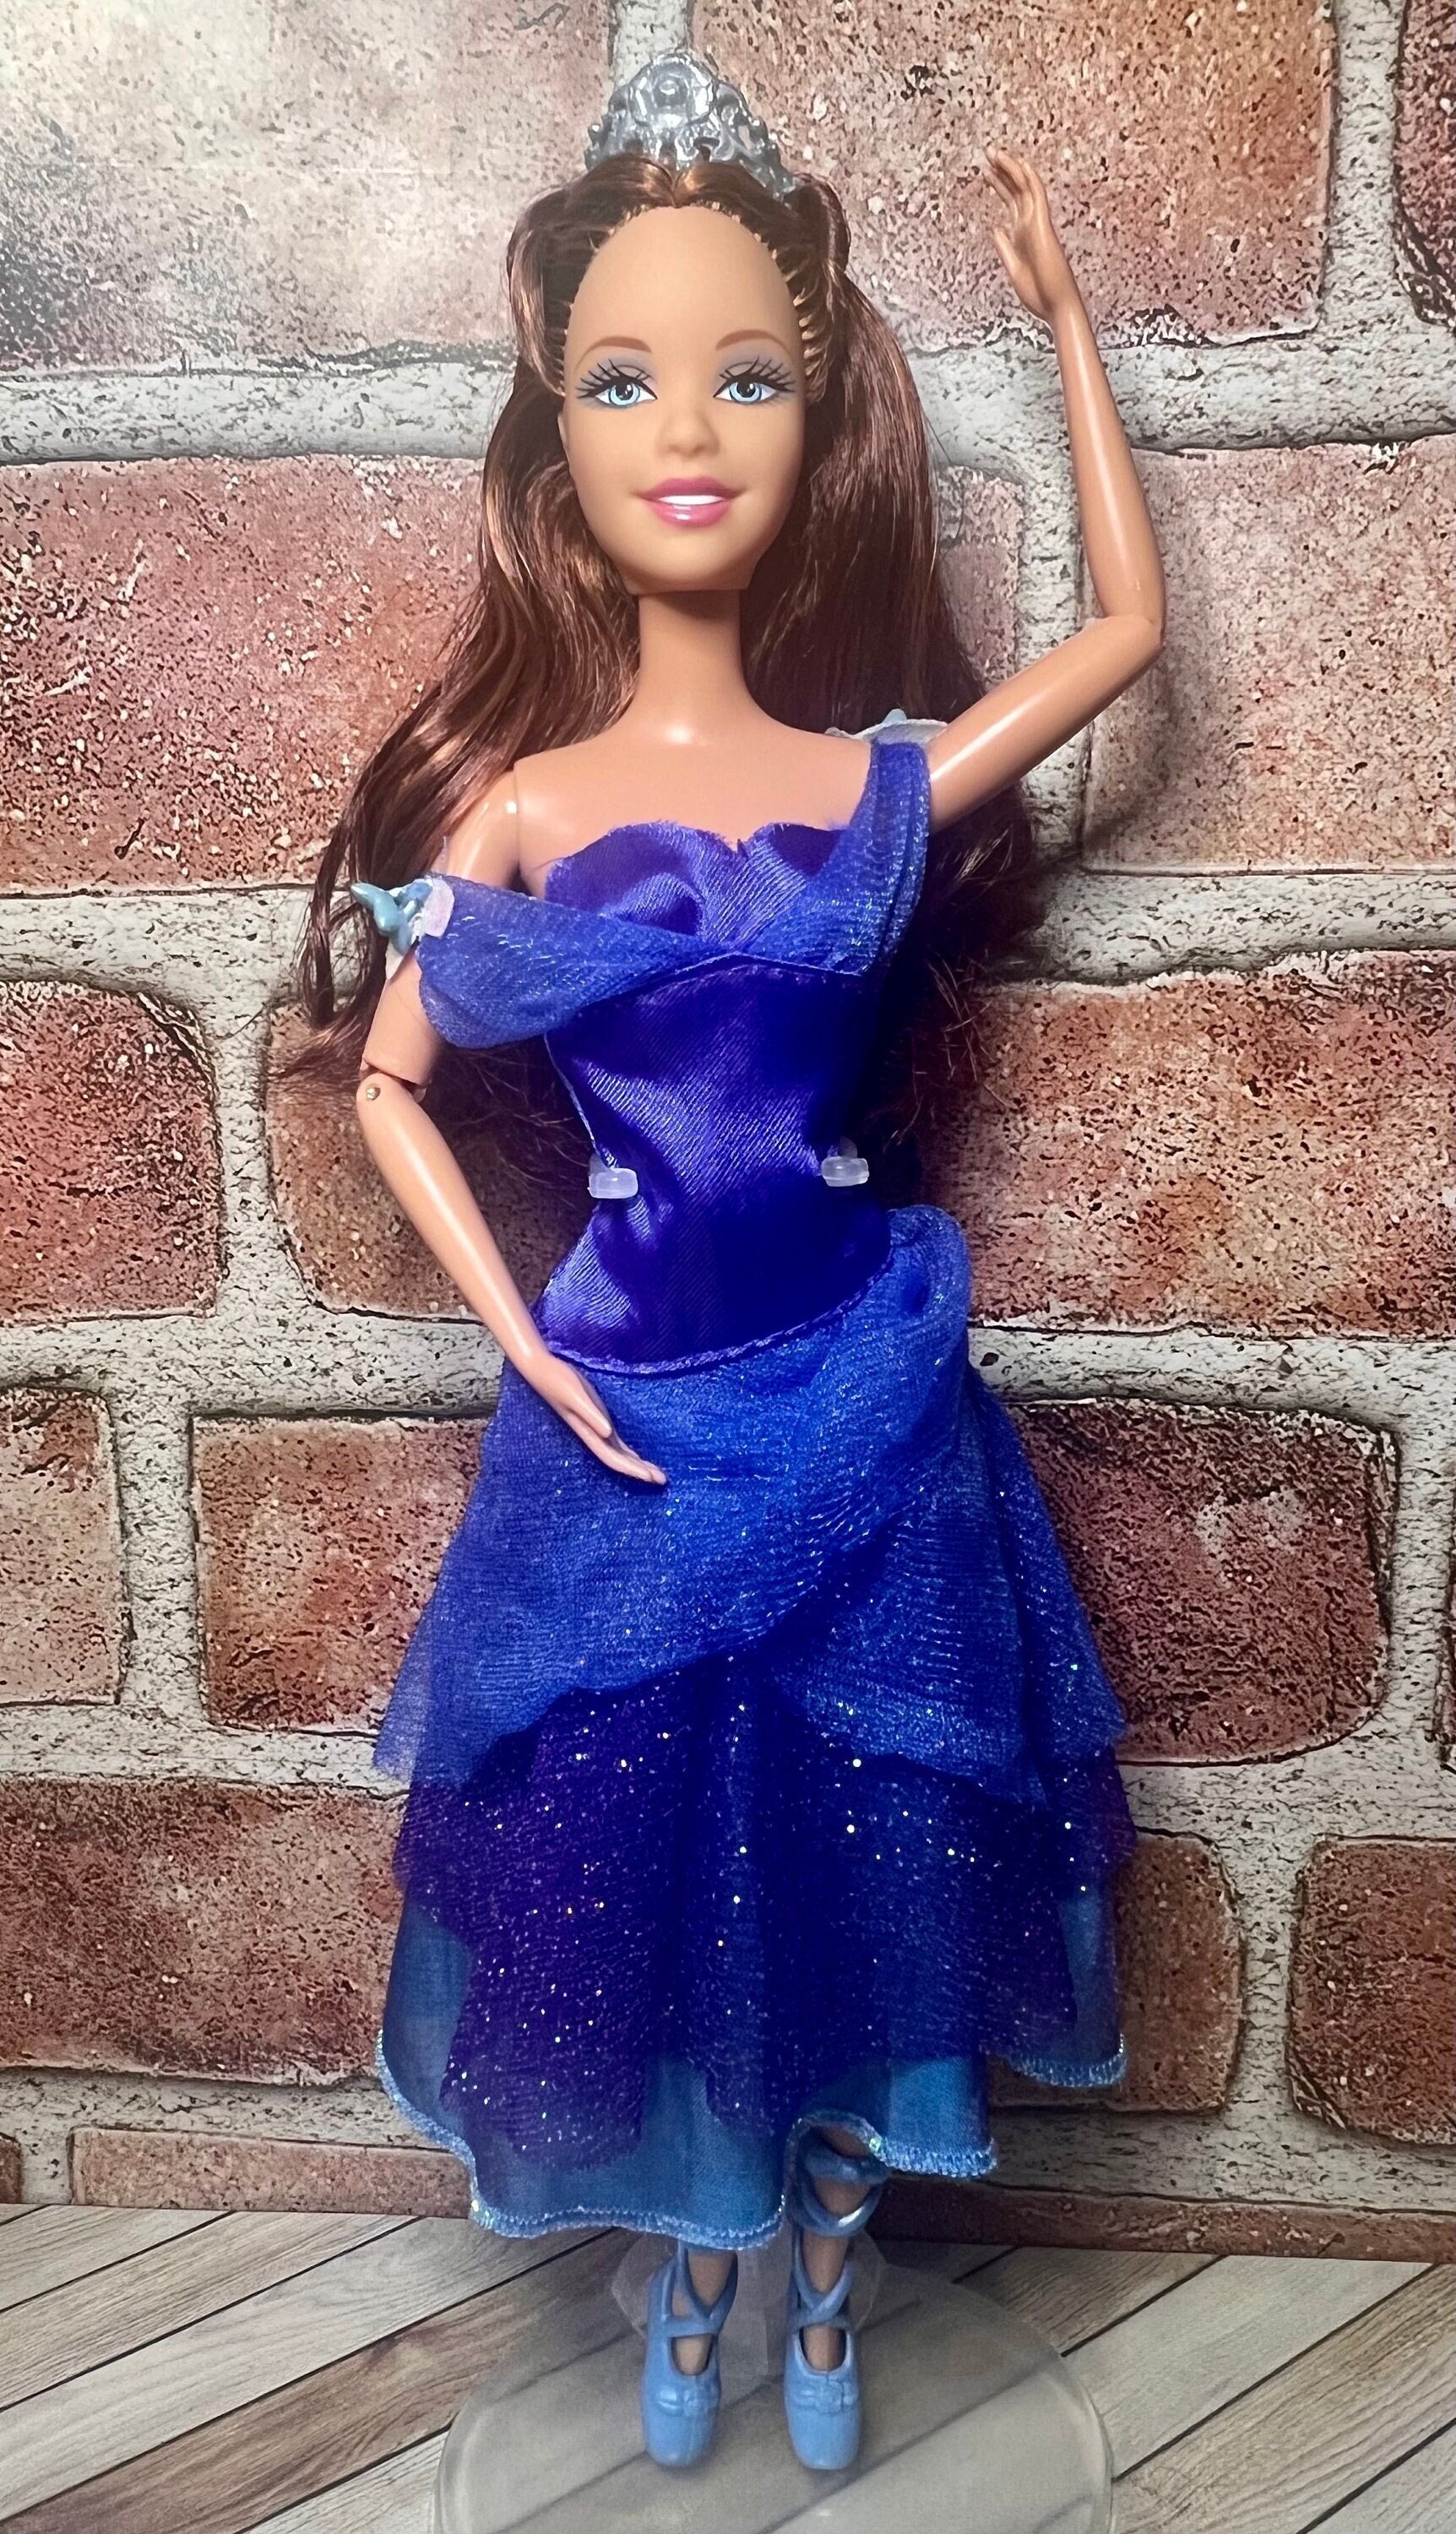 Barbie(バービー) in The 12 Dancing Princesses: Princess Delia